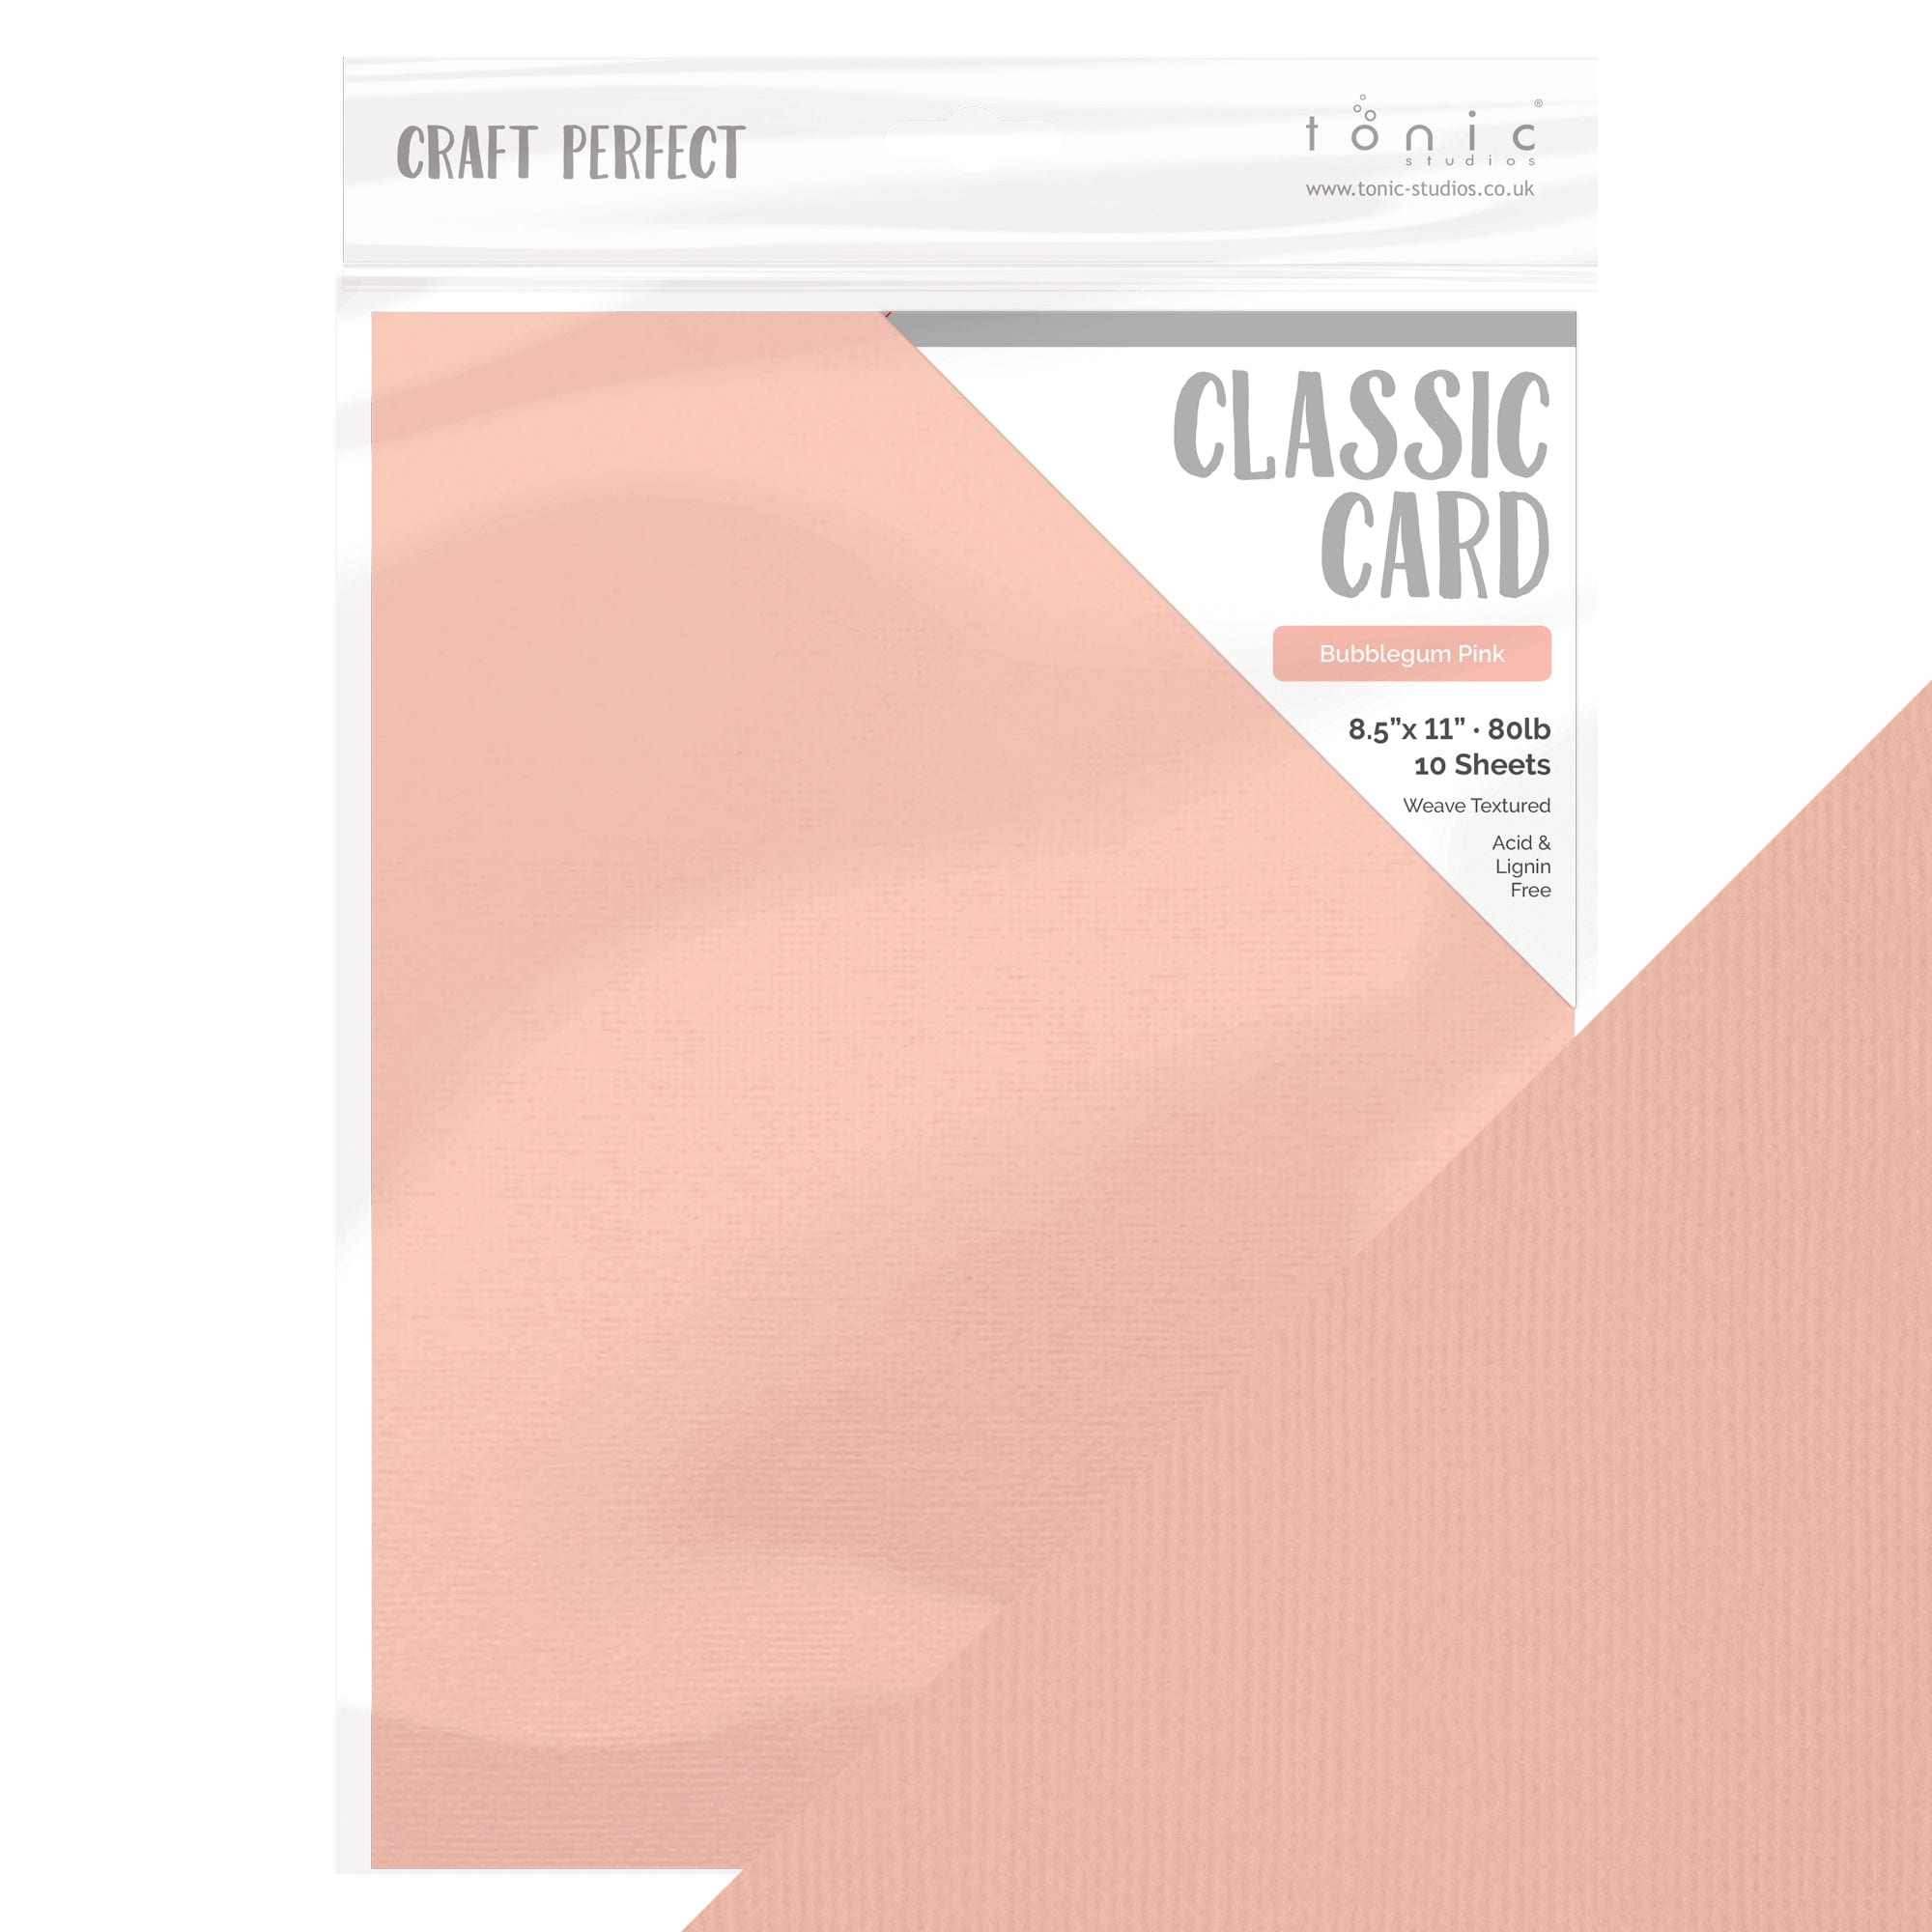 Pink Shimmer Cardstock, Pink Shimmer Paper, 65 Cardstock 8.5x11, 10 Sheets  